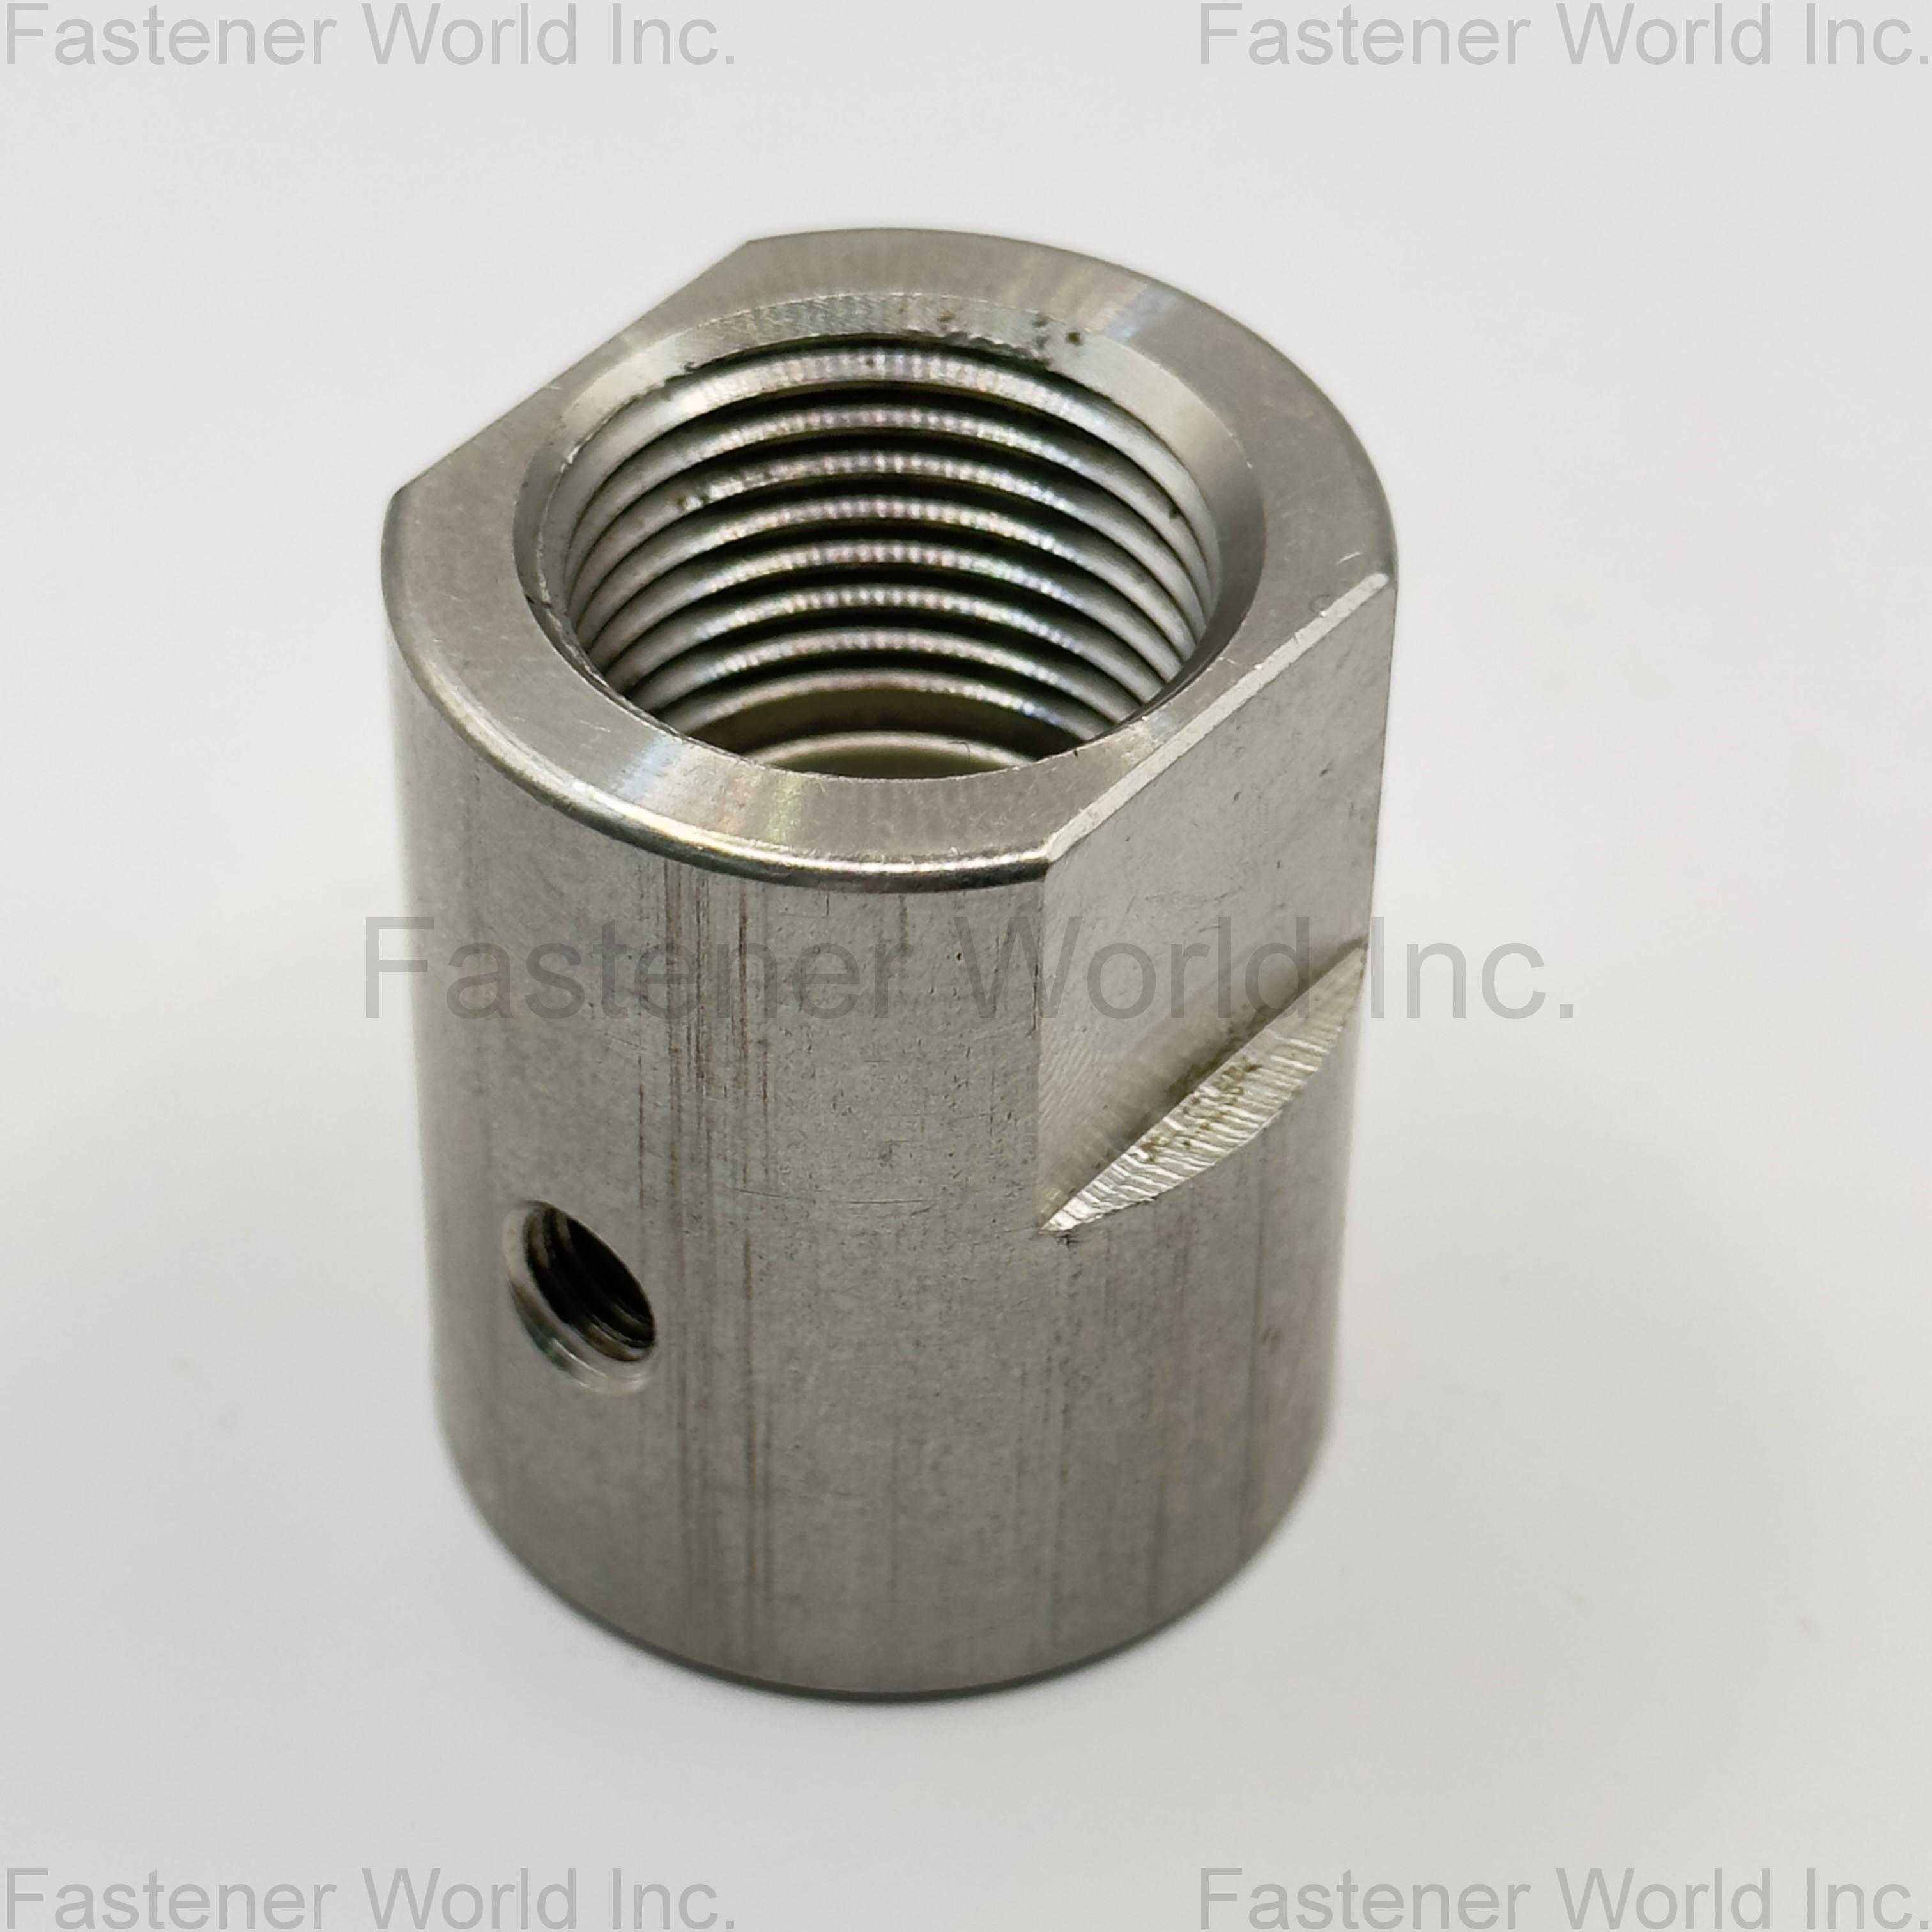 MINKUN INDUSTRY CO., LTD. ,  Stainless Steel High-Pressure Pipe Fittings